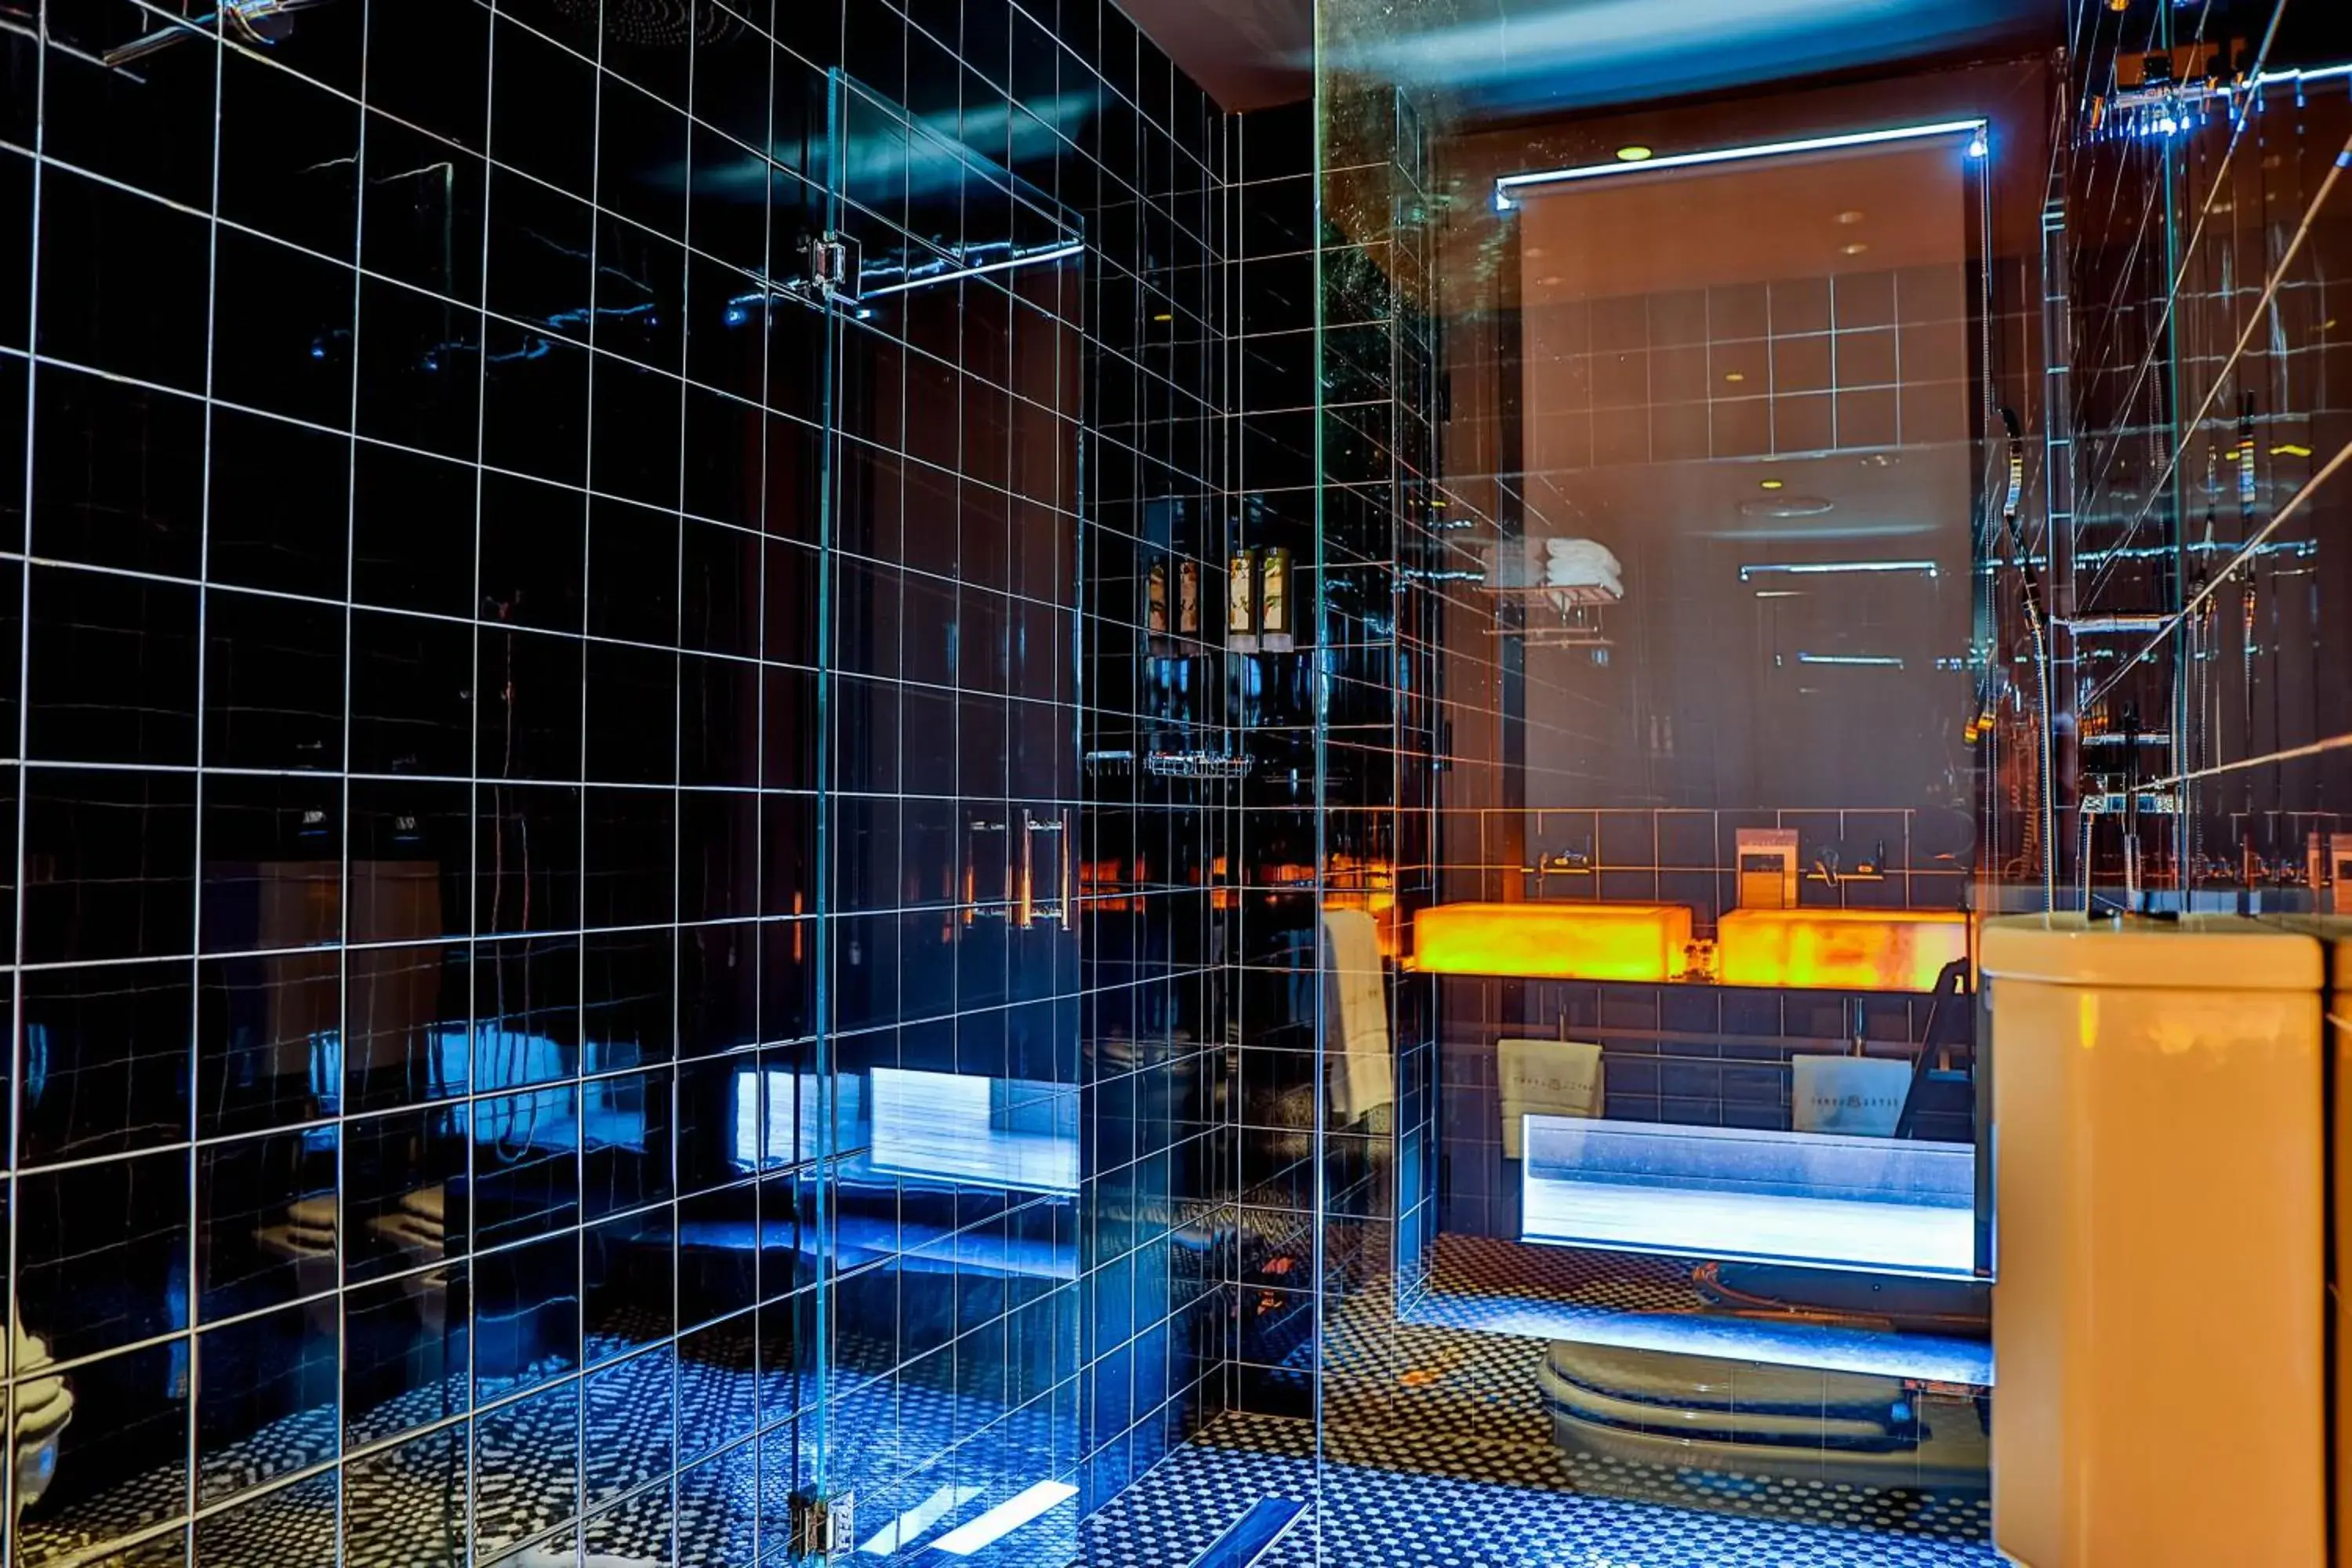 Shower, Bathroom in Hotel Lobby Room Sevilla